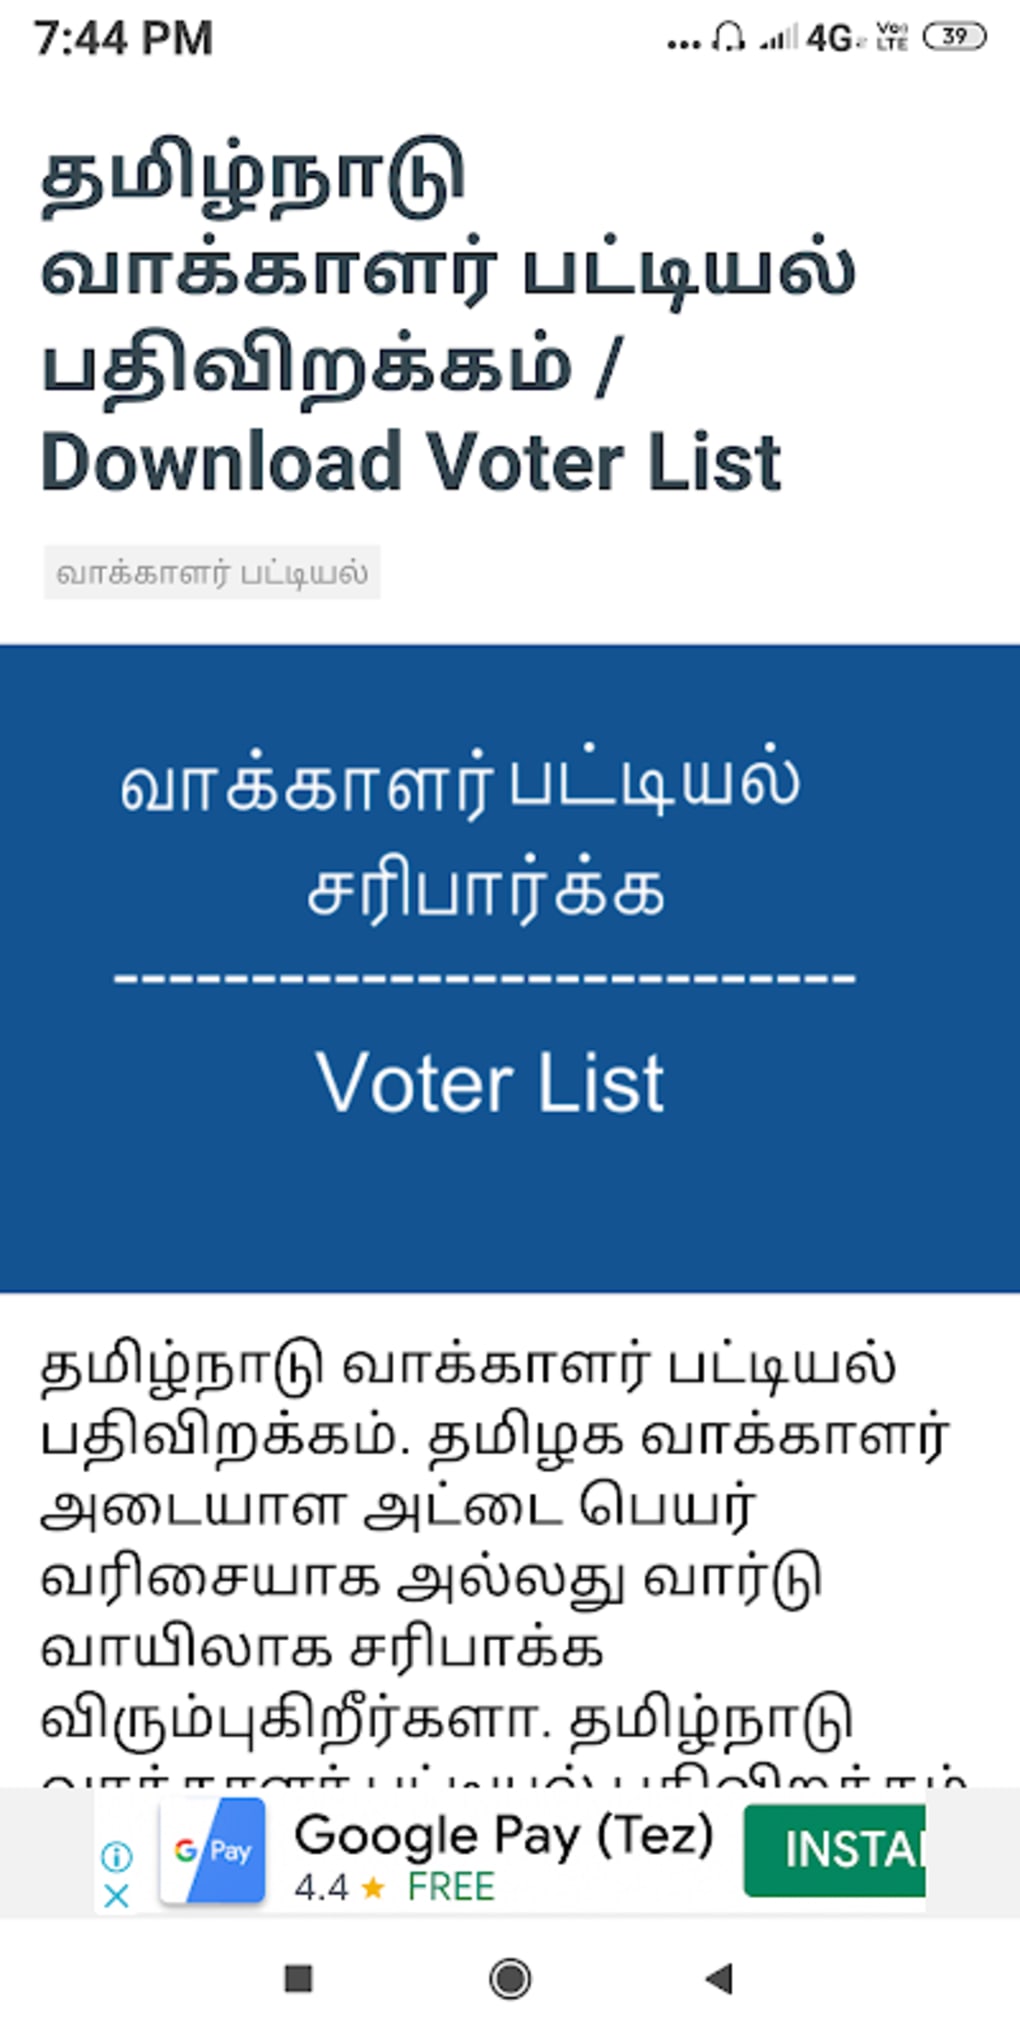 Tamil Nadu Voter List 2021 APK for Android Download